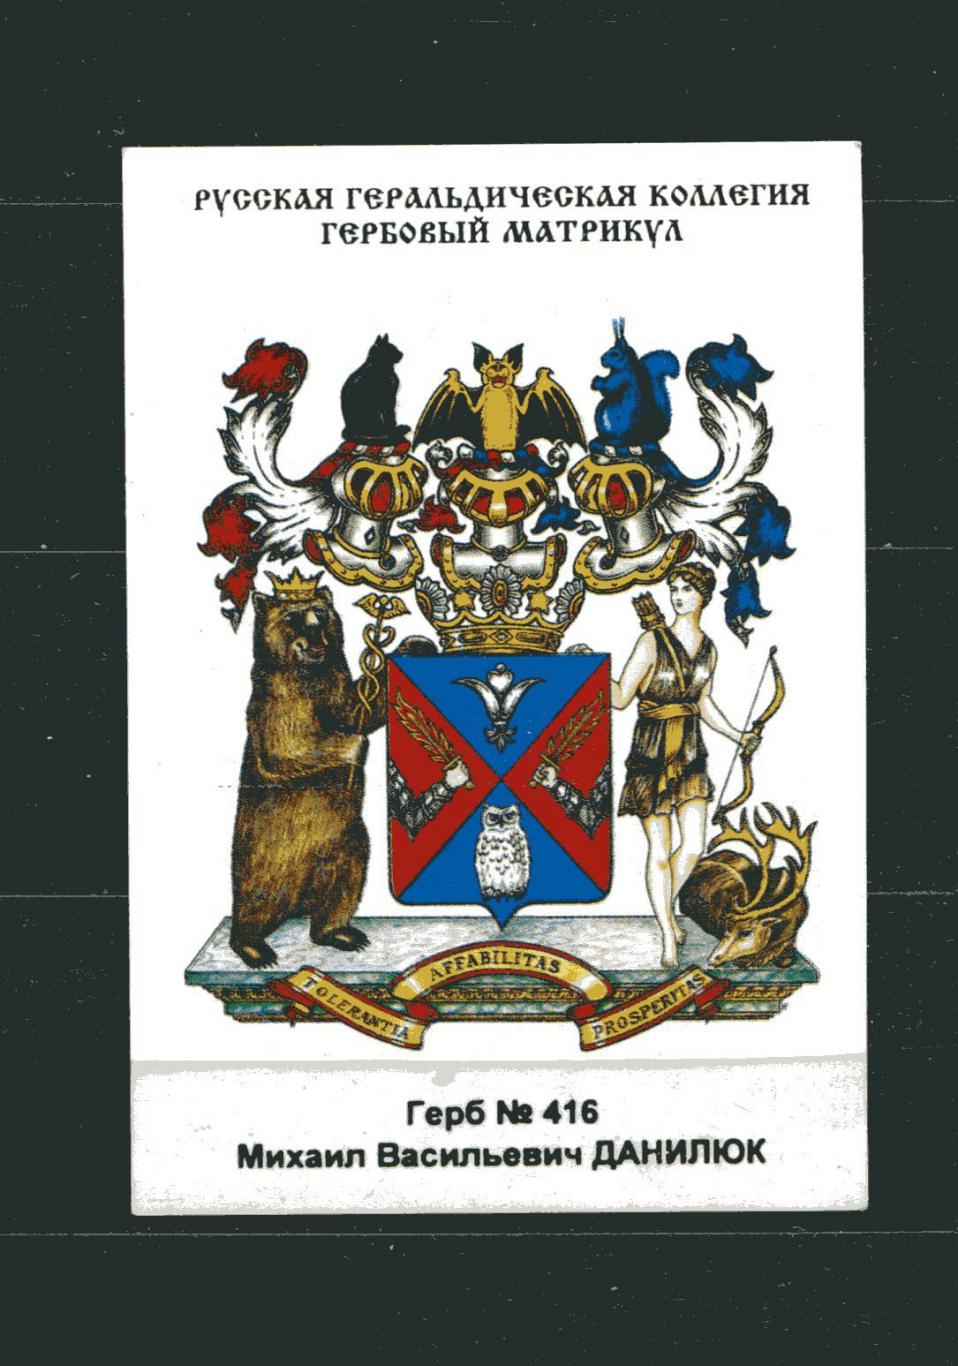 КАЛЕНДАРИК КАРМАННЫЙ РОССИЯ 1999 ГЕРБОВЫЙ МАТРИКУЛ ГЕРБ № 416